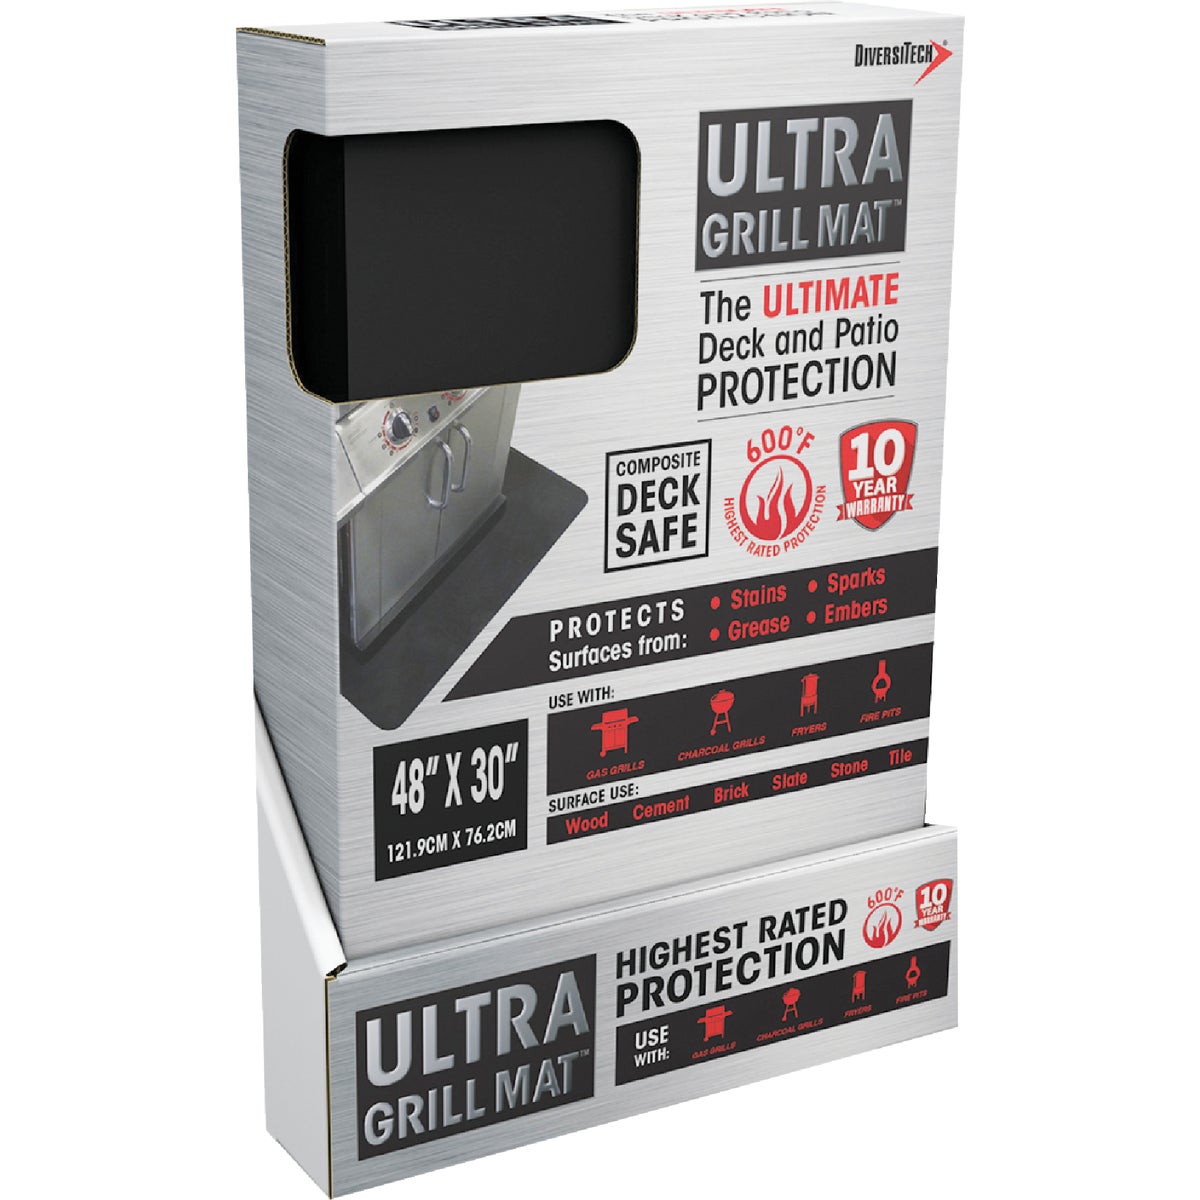 Ultra Grill Mat Diversitech UGM-4830 Diversitech Ultra Grill Mat 30 In. W. x 48 In. L. Black Rectangle Grill Mat UGM-4830